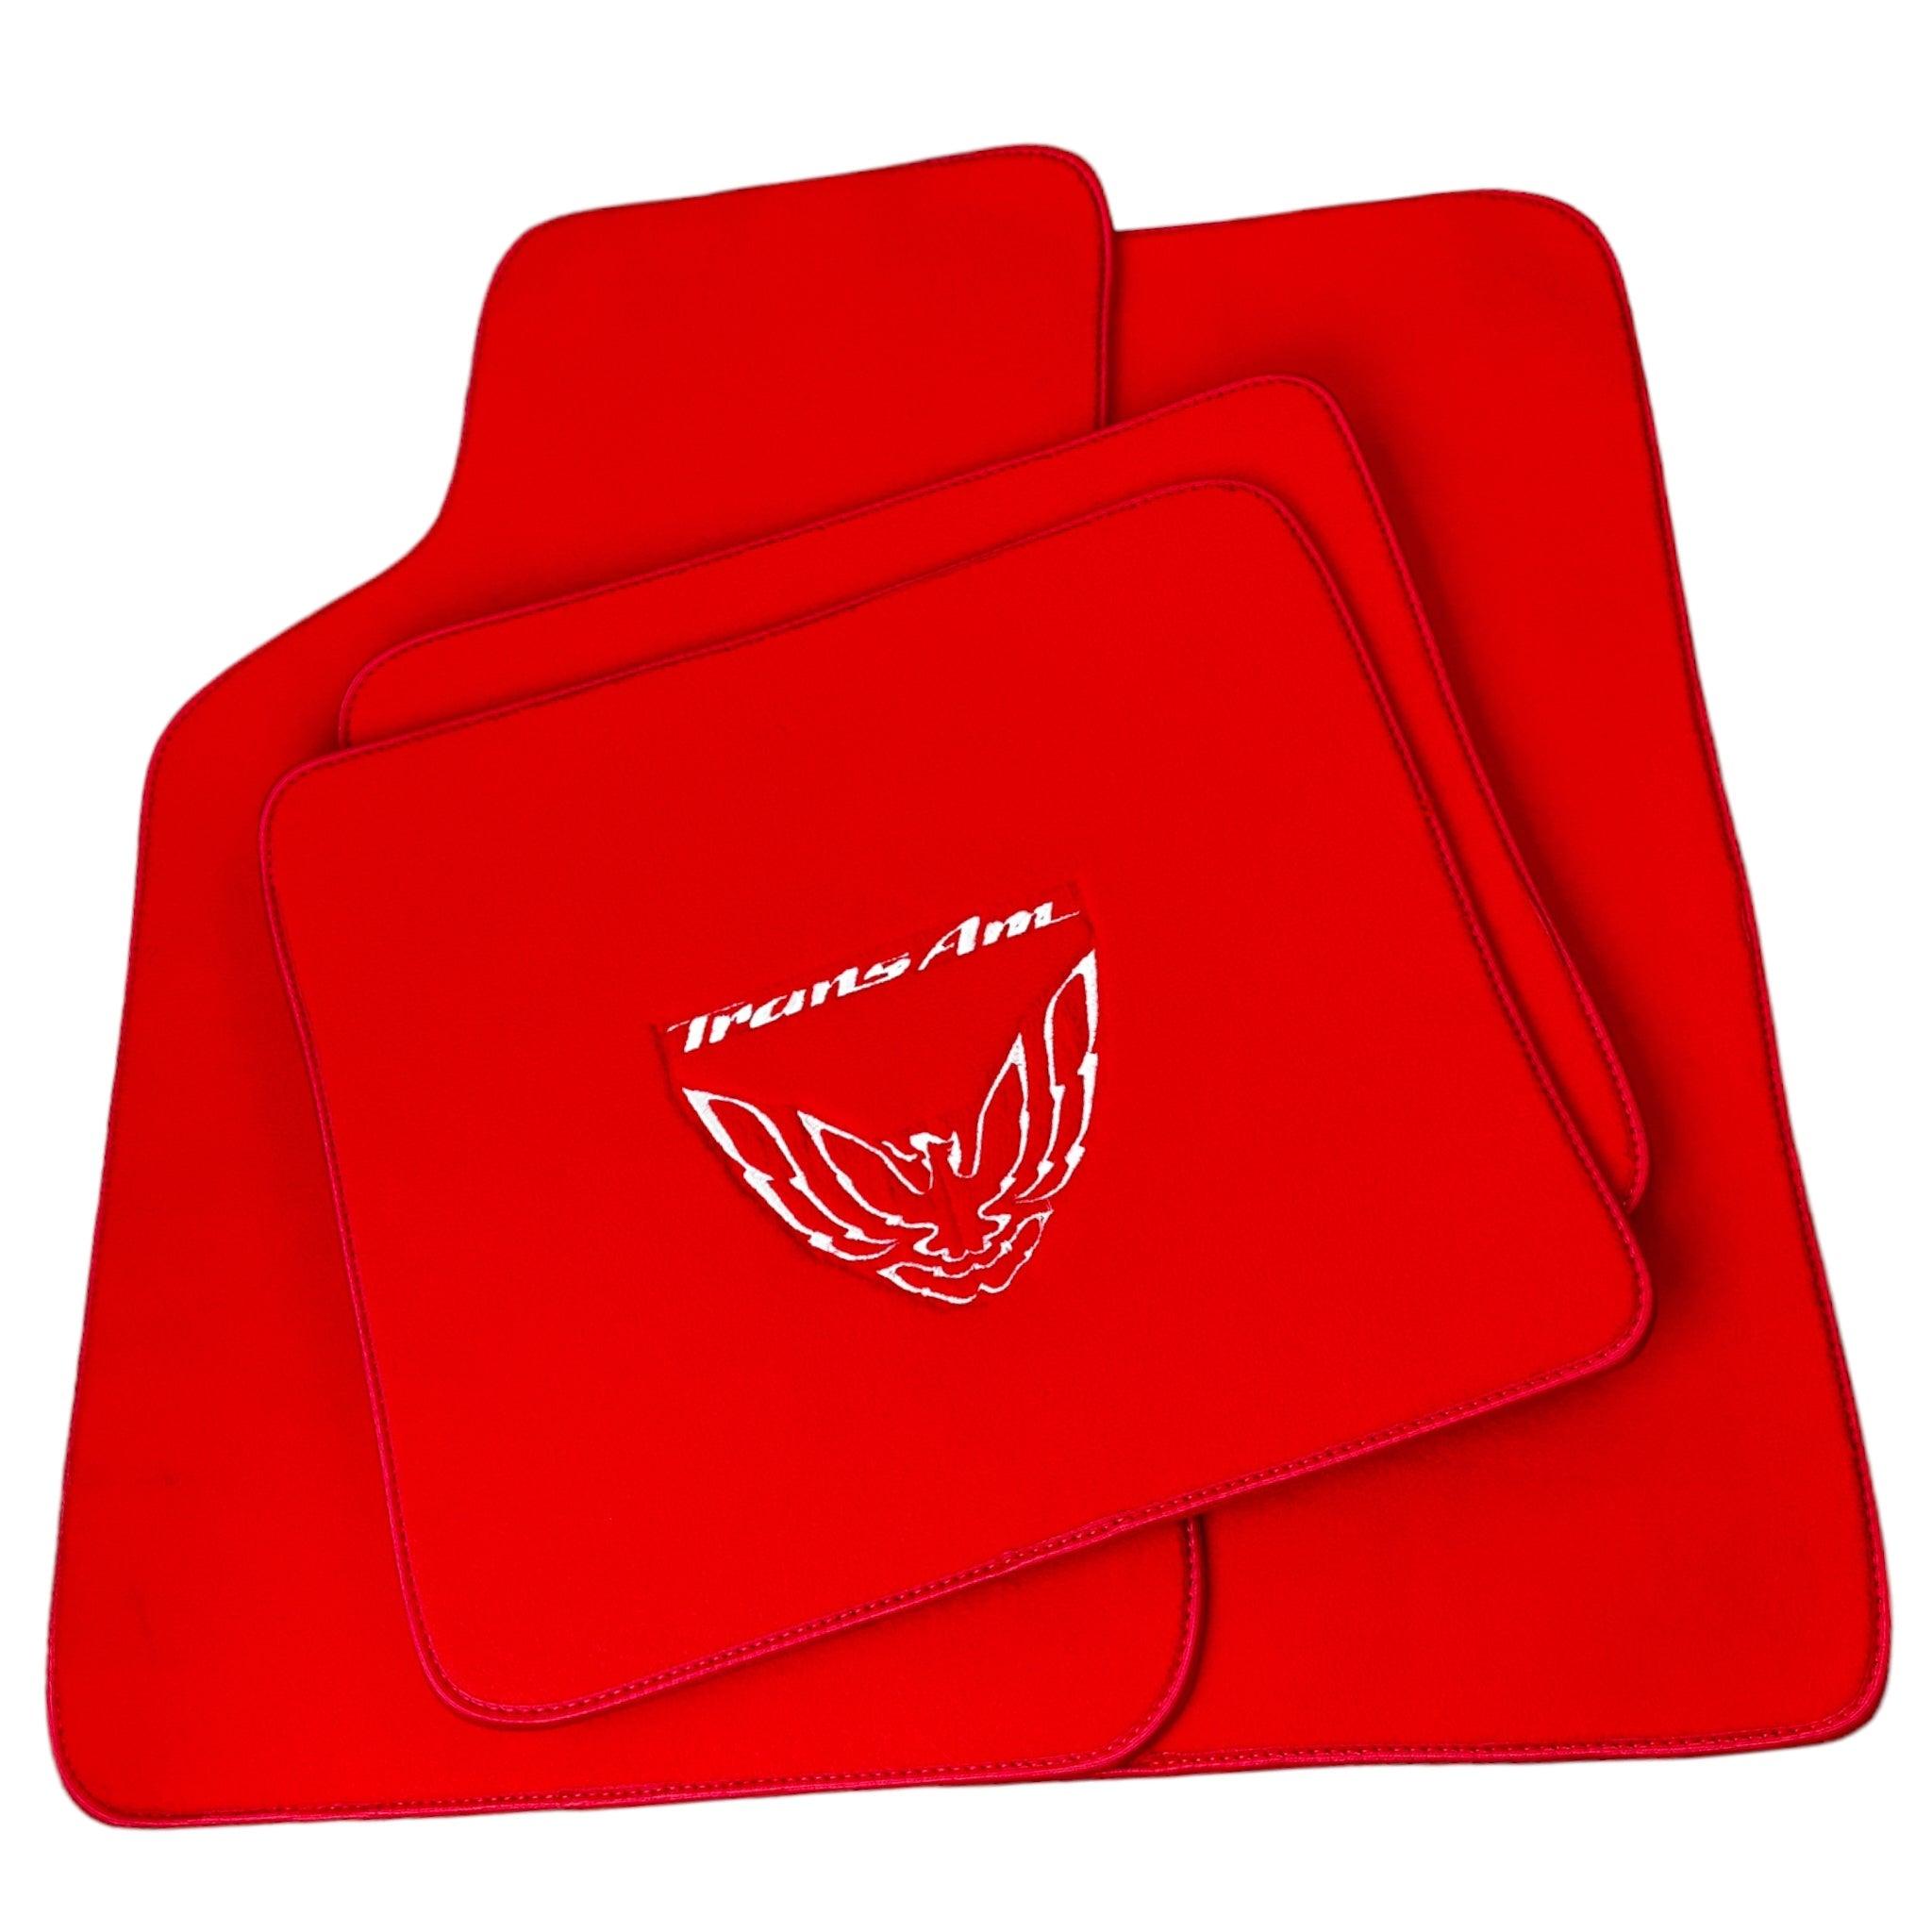 Red Floor Mats for Pontiac FireBird (1970-1981) with Trans Am Logo